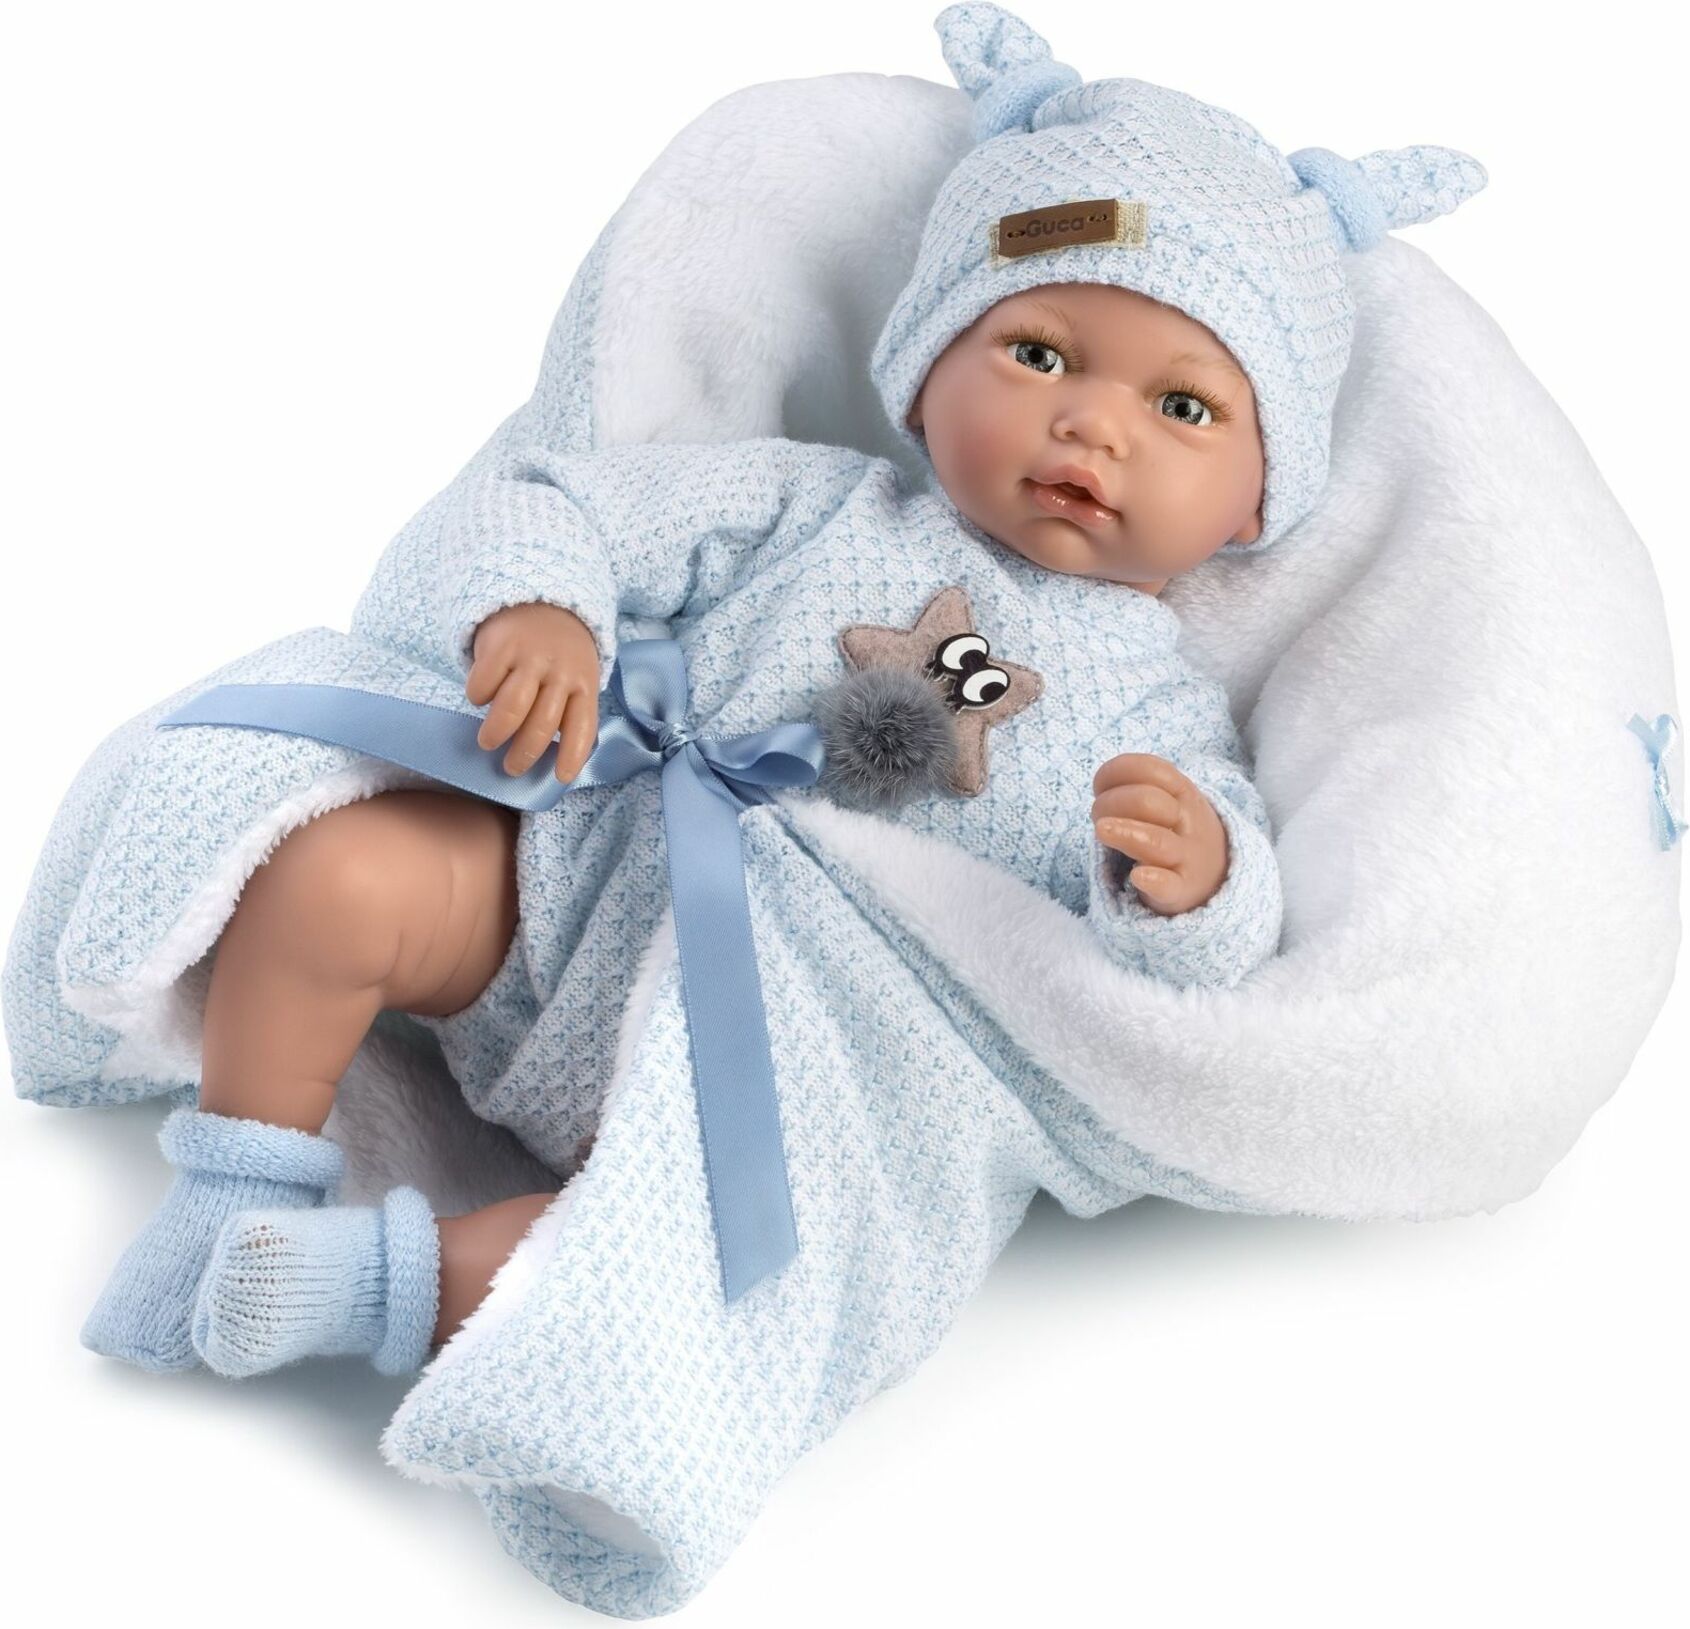 Guca 10221 HUGO - realistická panenka miminko se zvuky a měkkým látkovým tělem - 38 cm